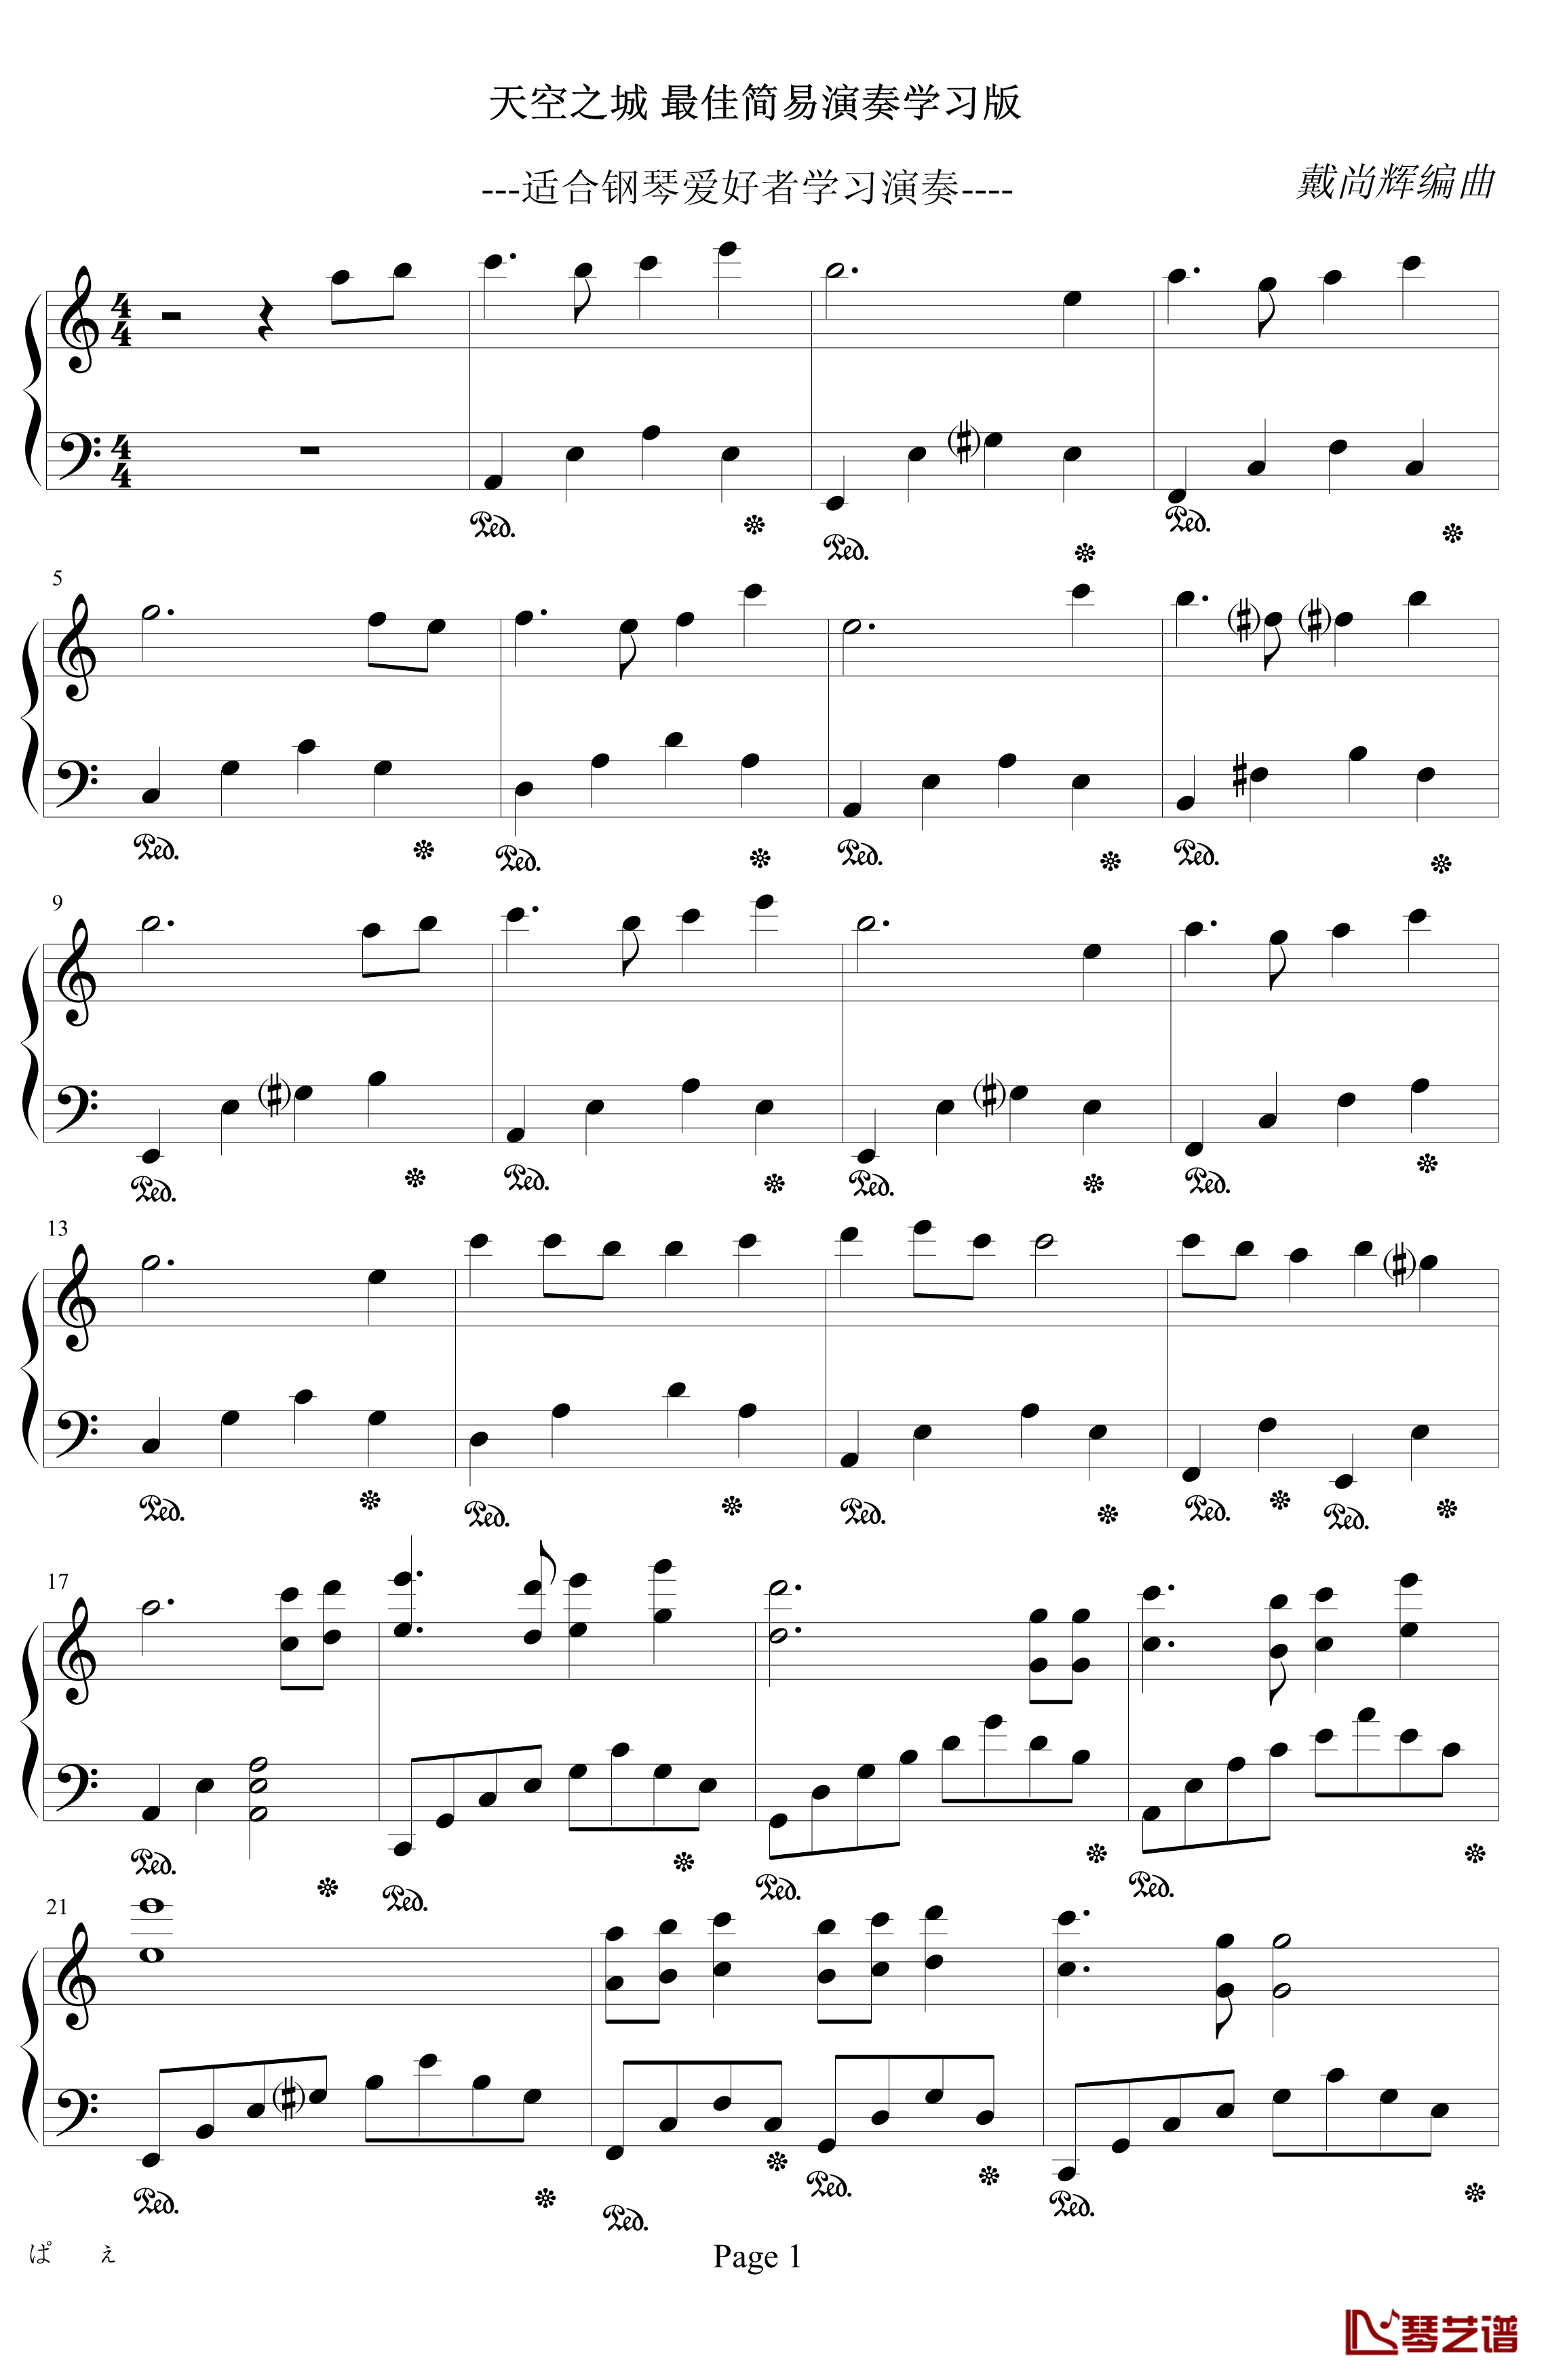 天空之城钢琴谱-最佳简易演奏学习版-戴尚辉1